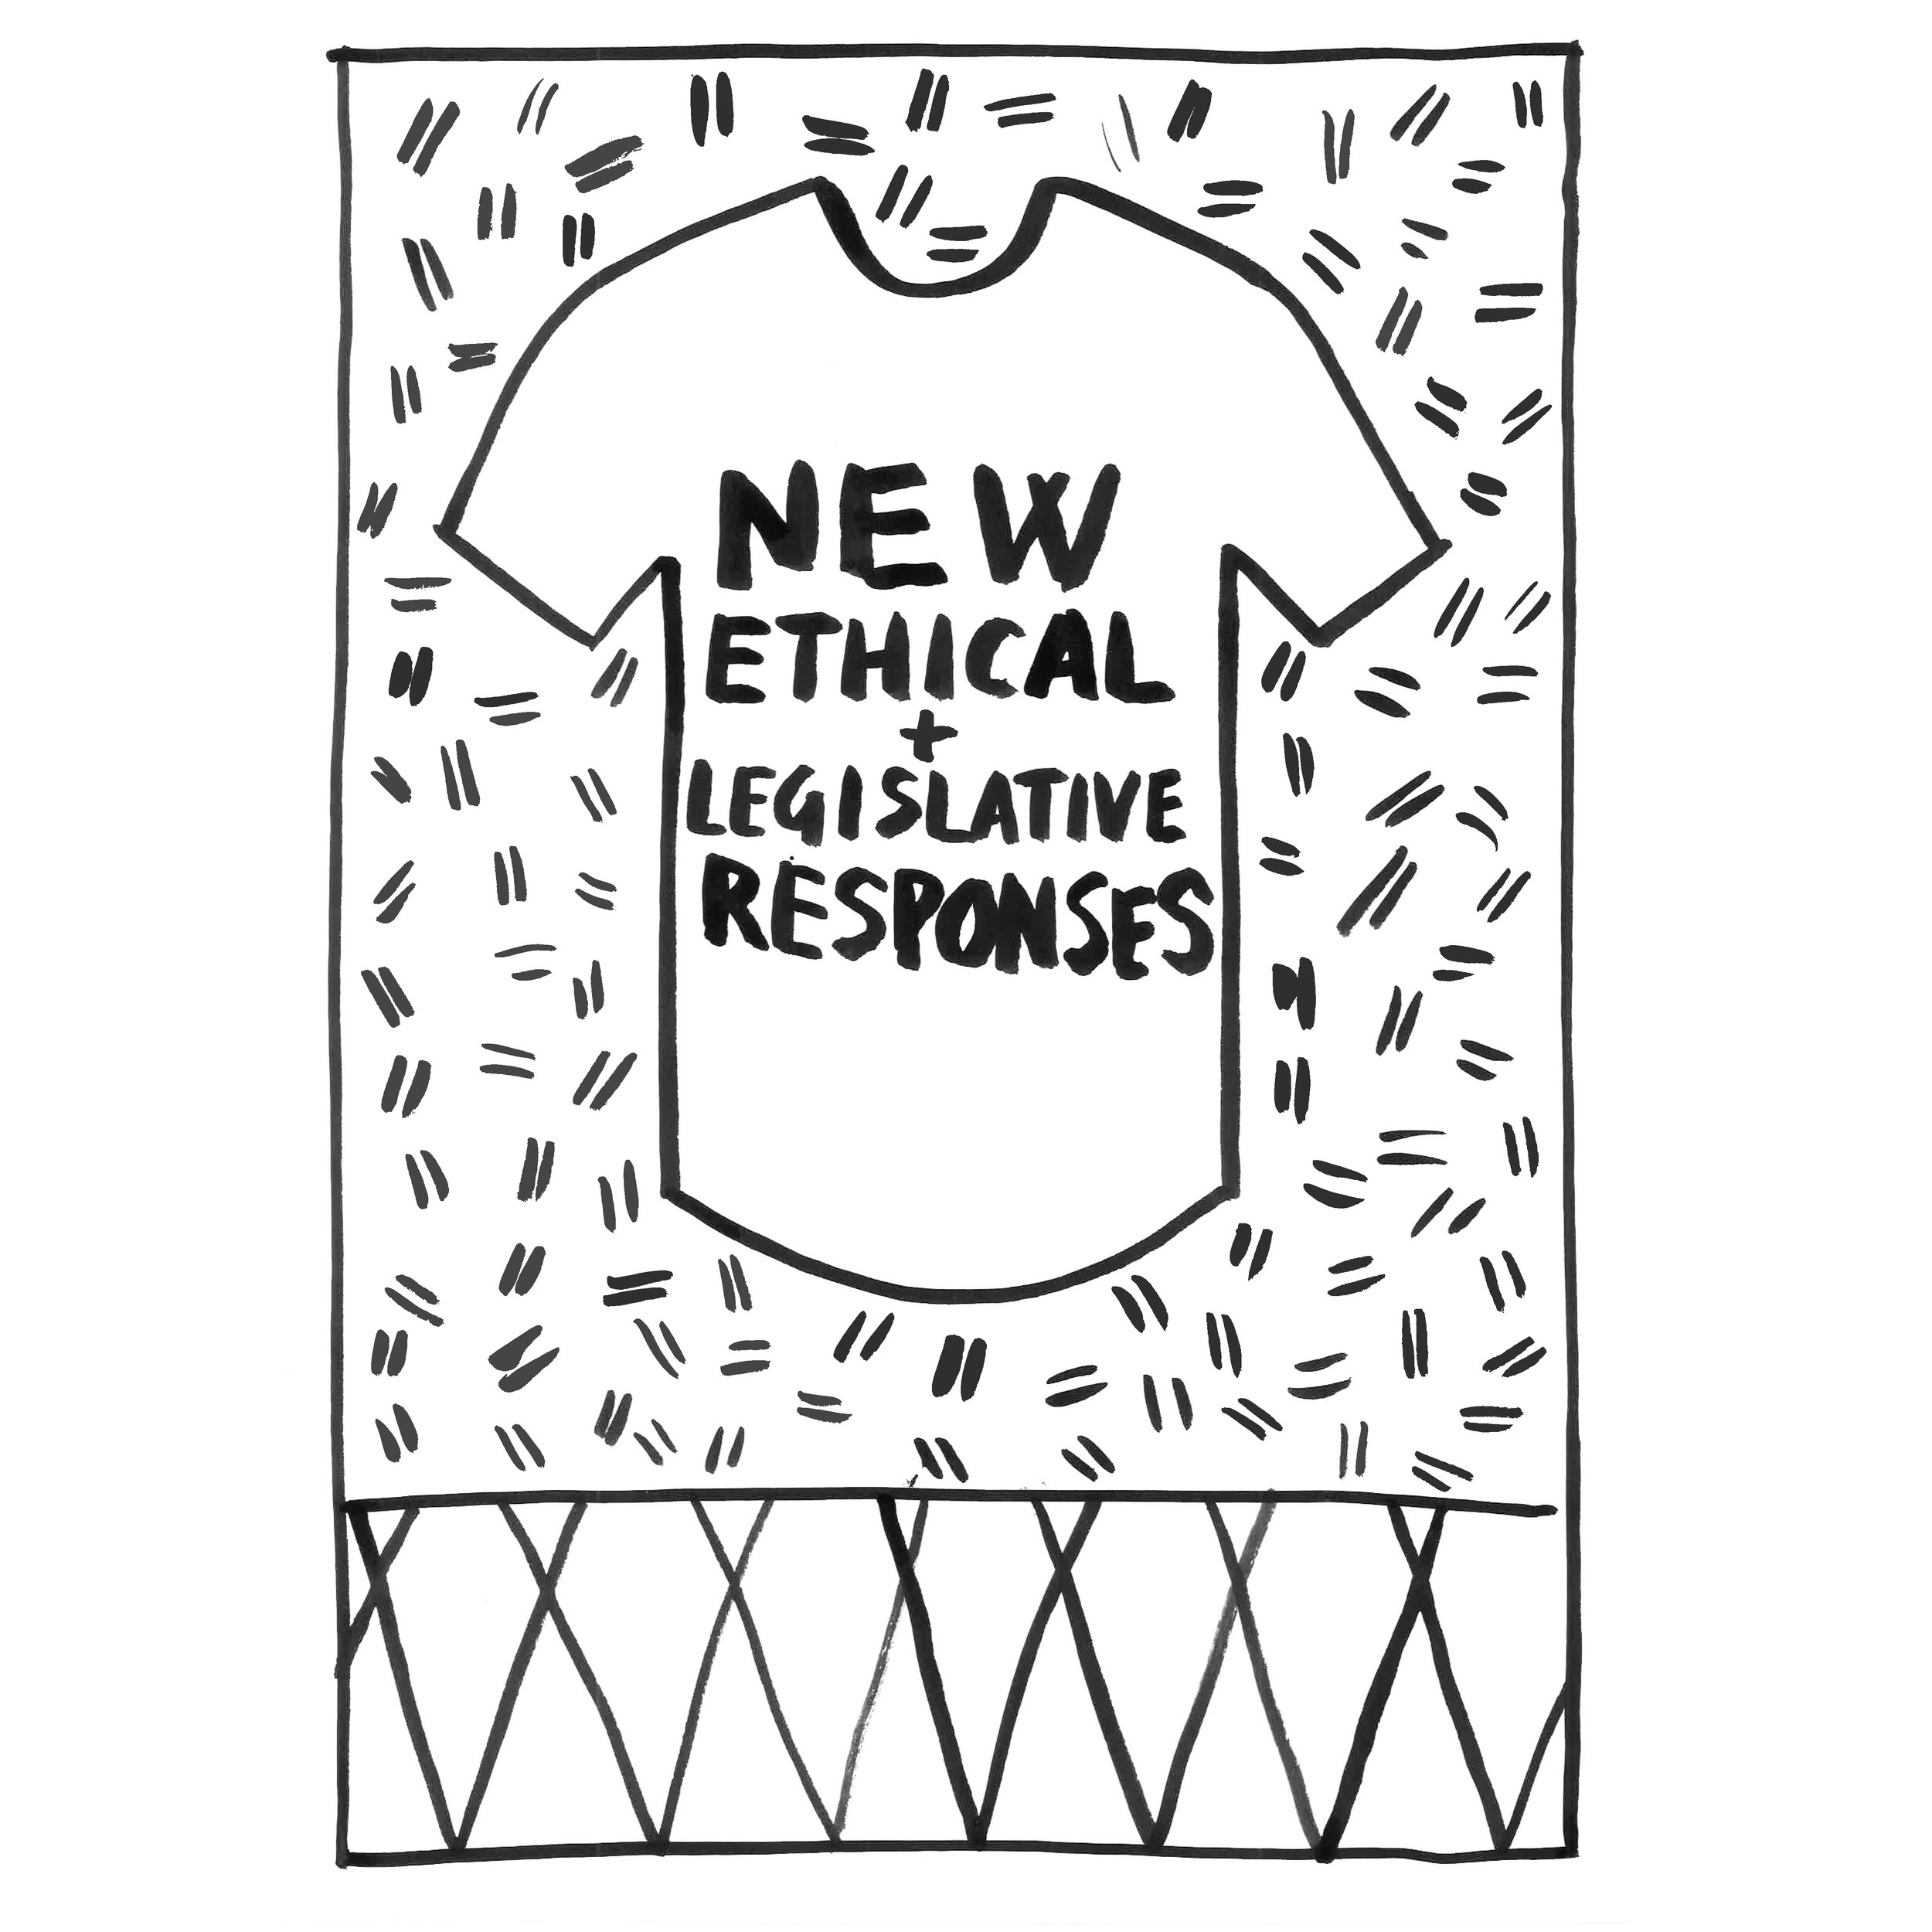 New Ethical and Legislative Responses.jpg